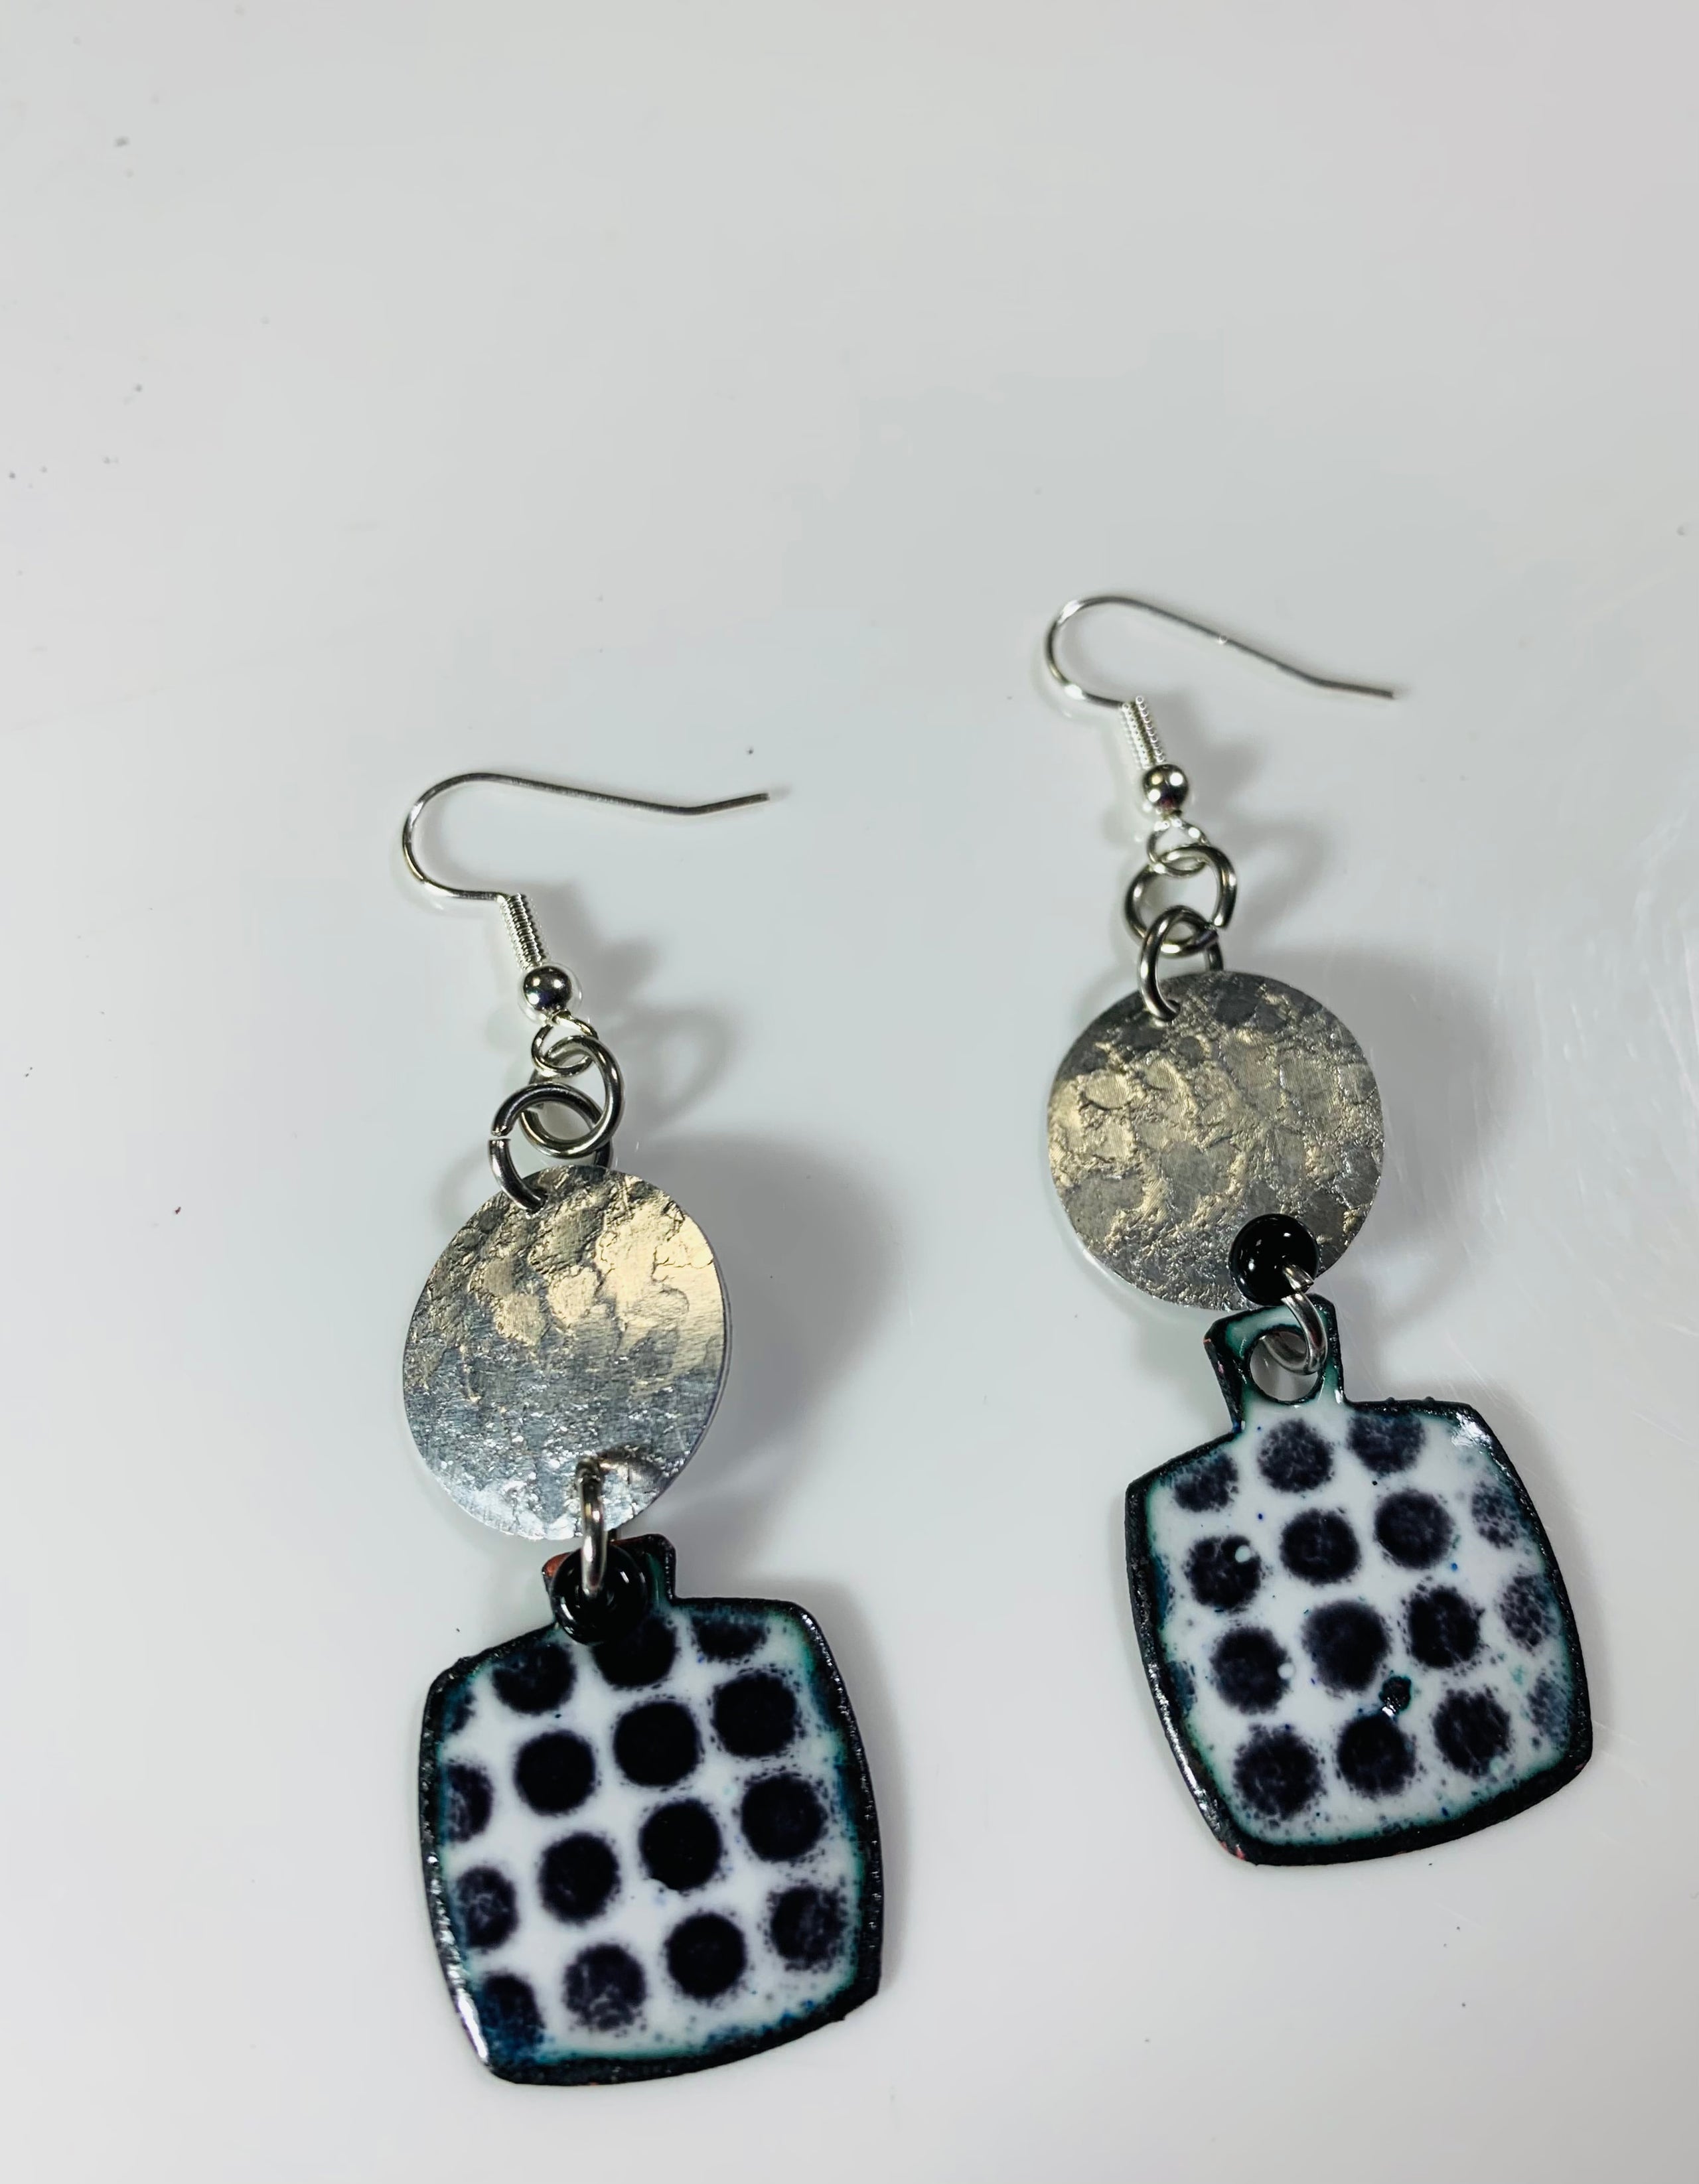 Polka Dot Dot black and white Enamel earrings by Christine Keller of ...